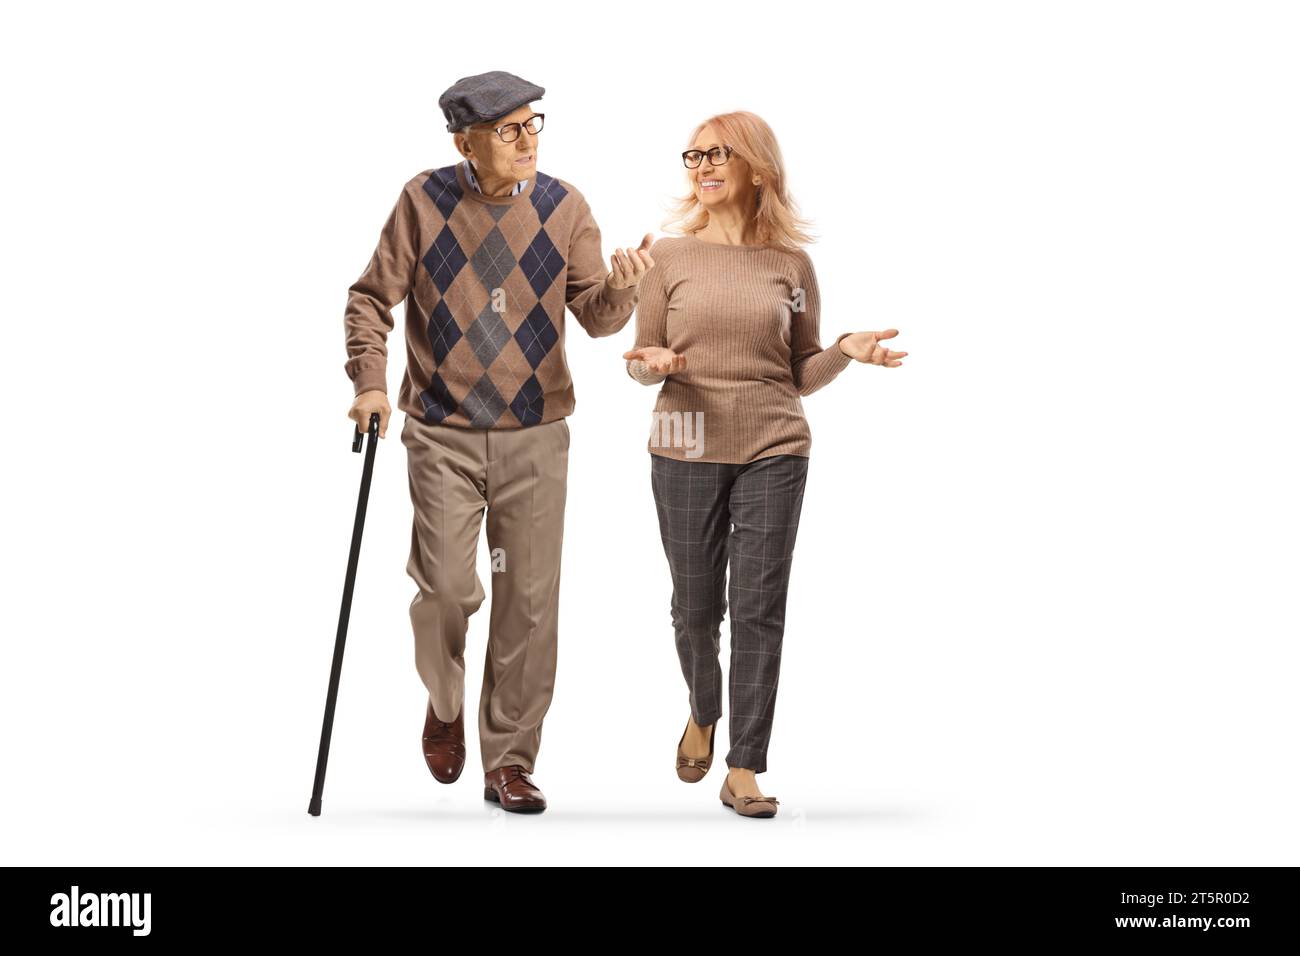 Homme âgé avec une canne marchant et parlant à une femme isolée sur fond blanc Banque D'Images